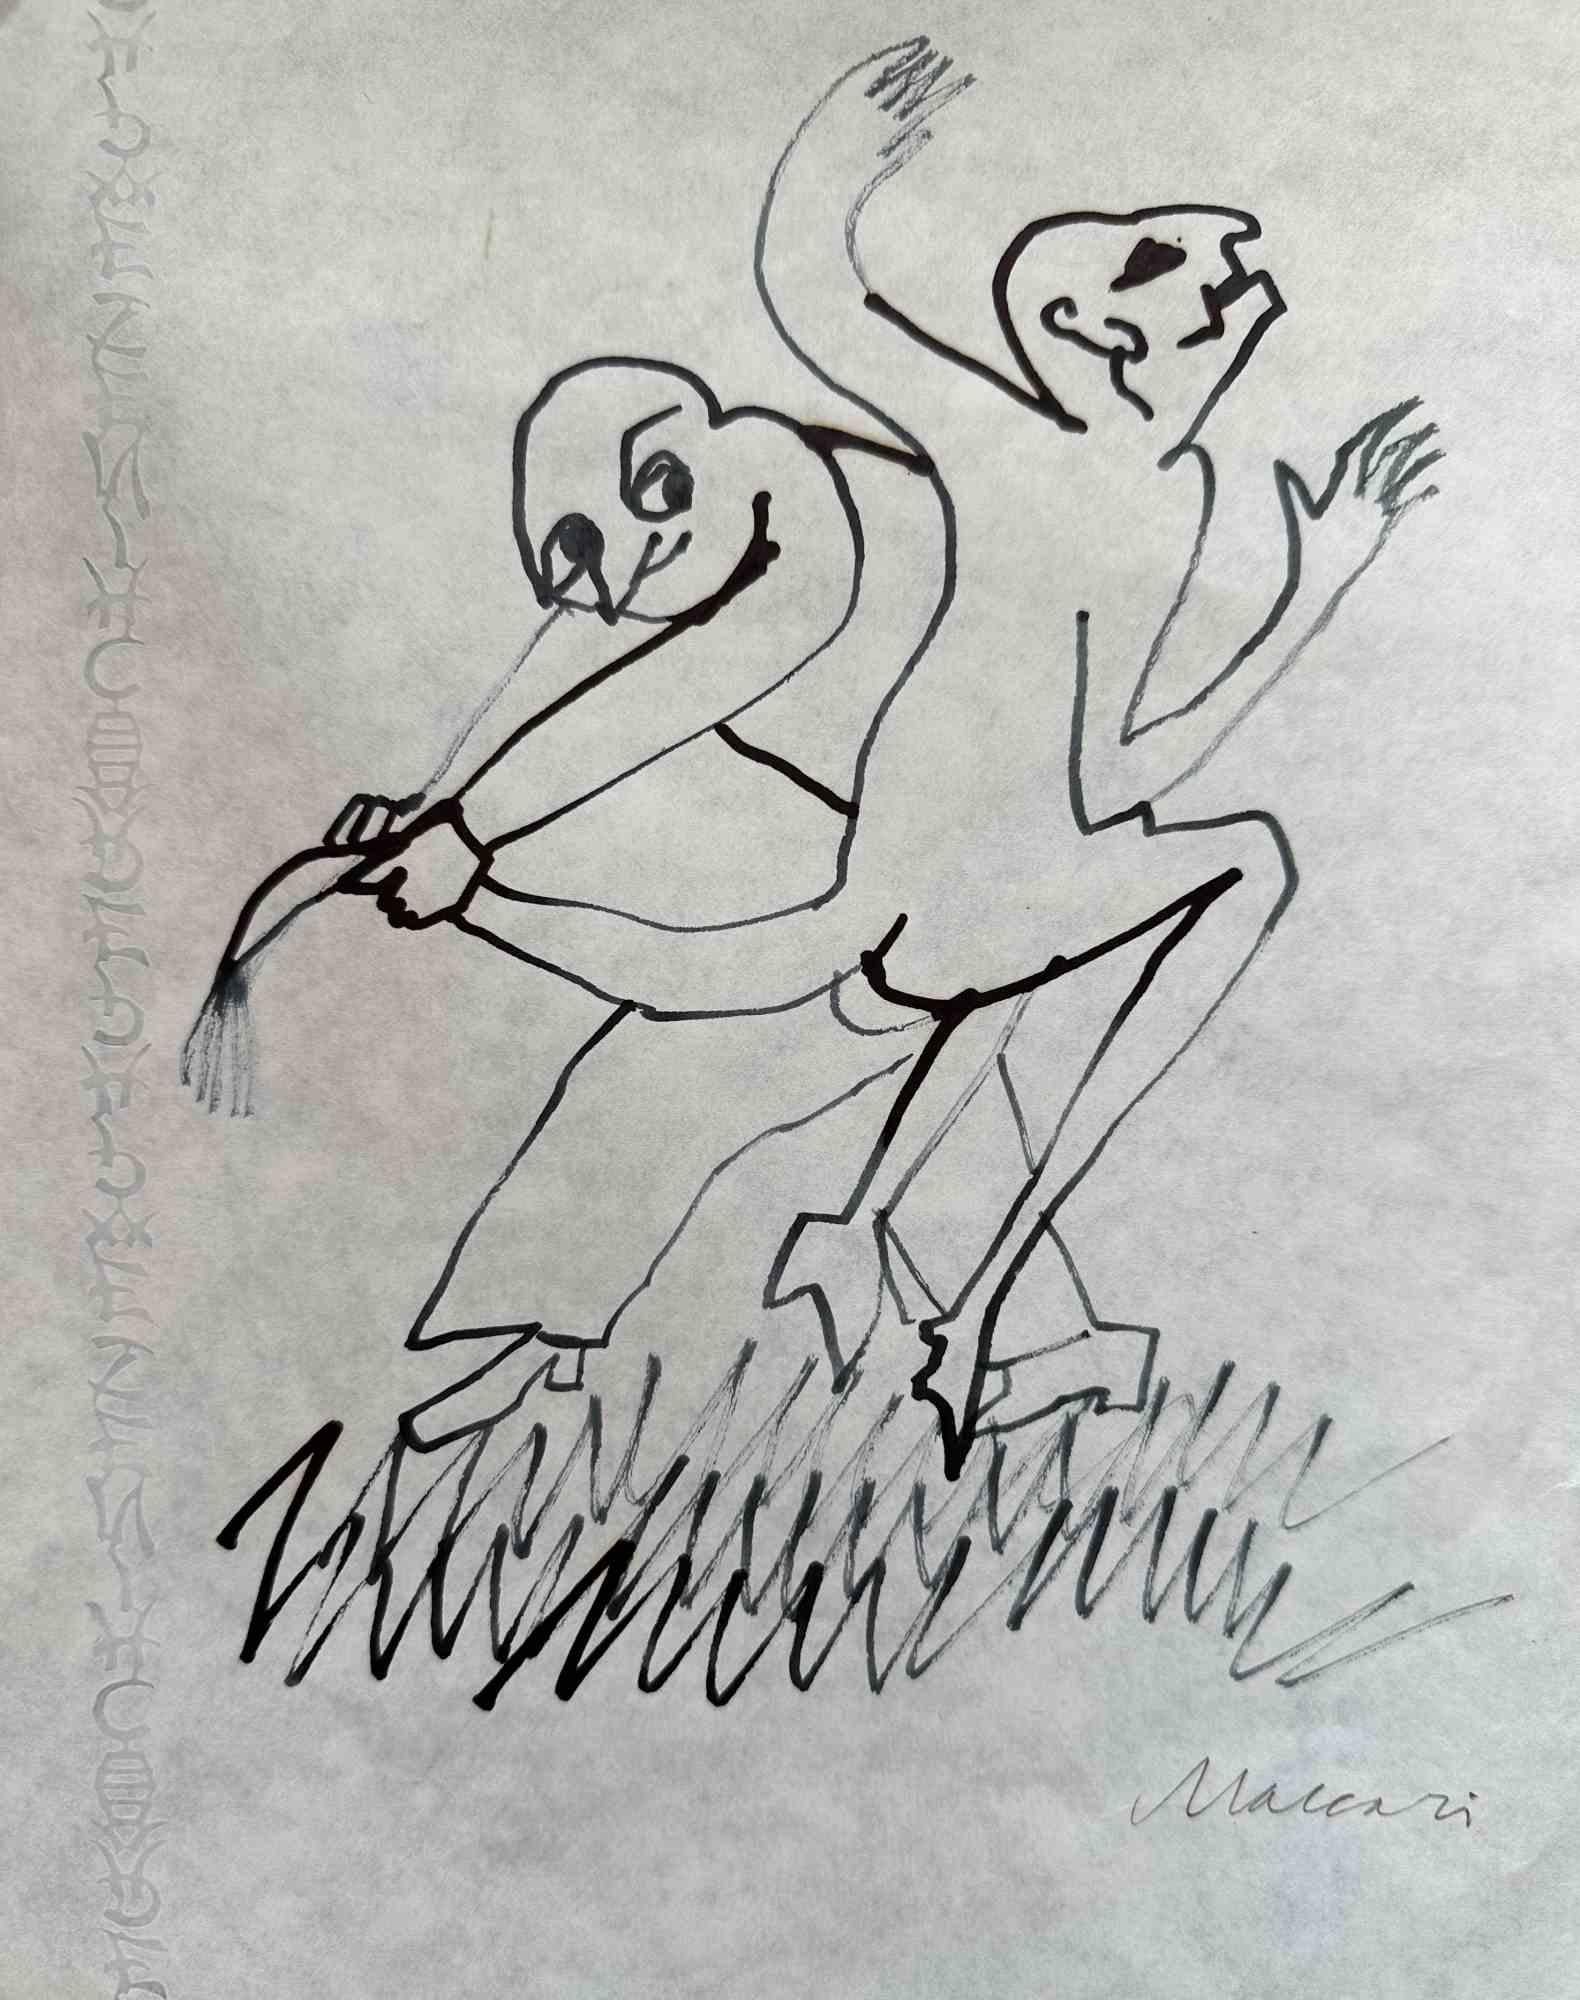 Dancing Figures ist eine Tuschezeichnung aus Porzellan von Mino Maccari aus dem Jahr 1975.

Rechts unten handsigniert.

Guter Zustand mit leichten Faltungen.

Mino Maccari (Siena, 1924-Rom, 16. Juni 1989) war ein italienischer Schriftsteller, Maler,